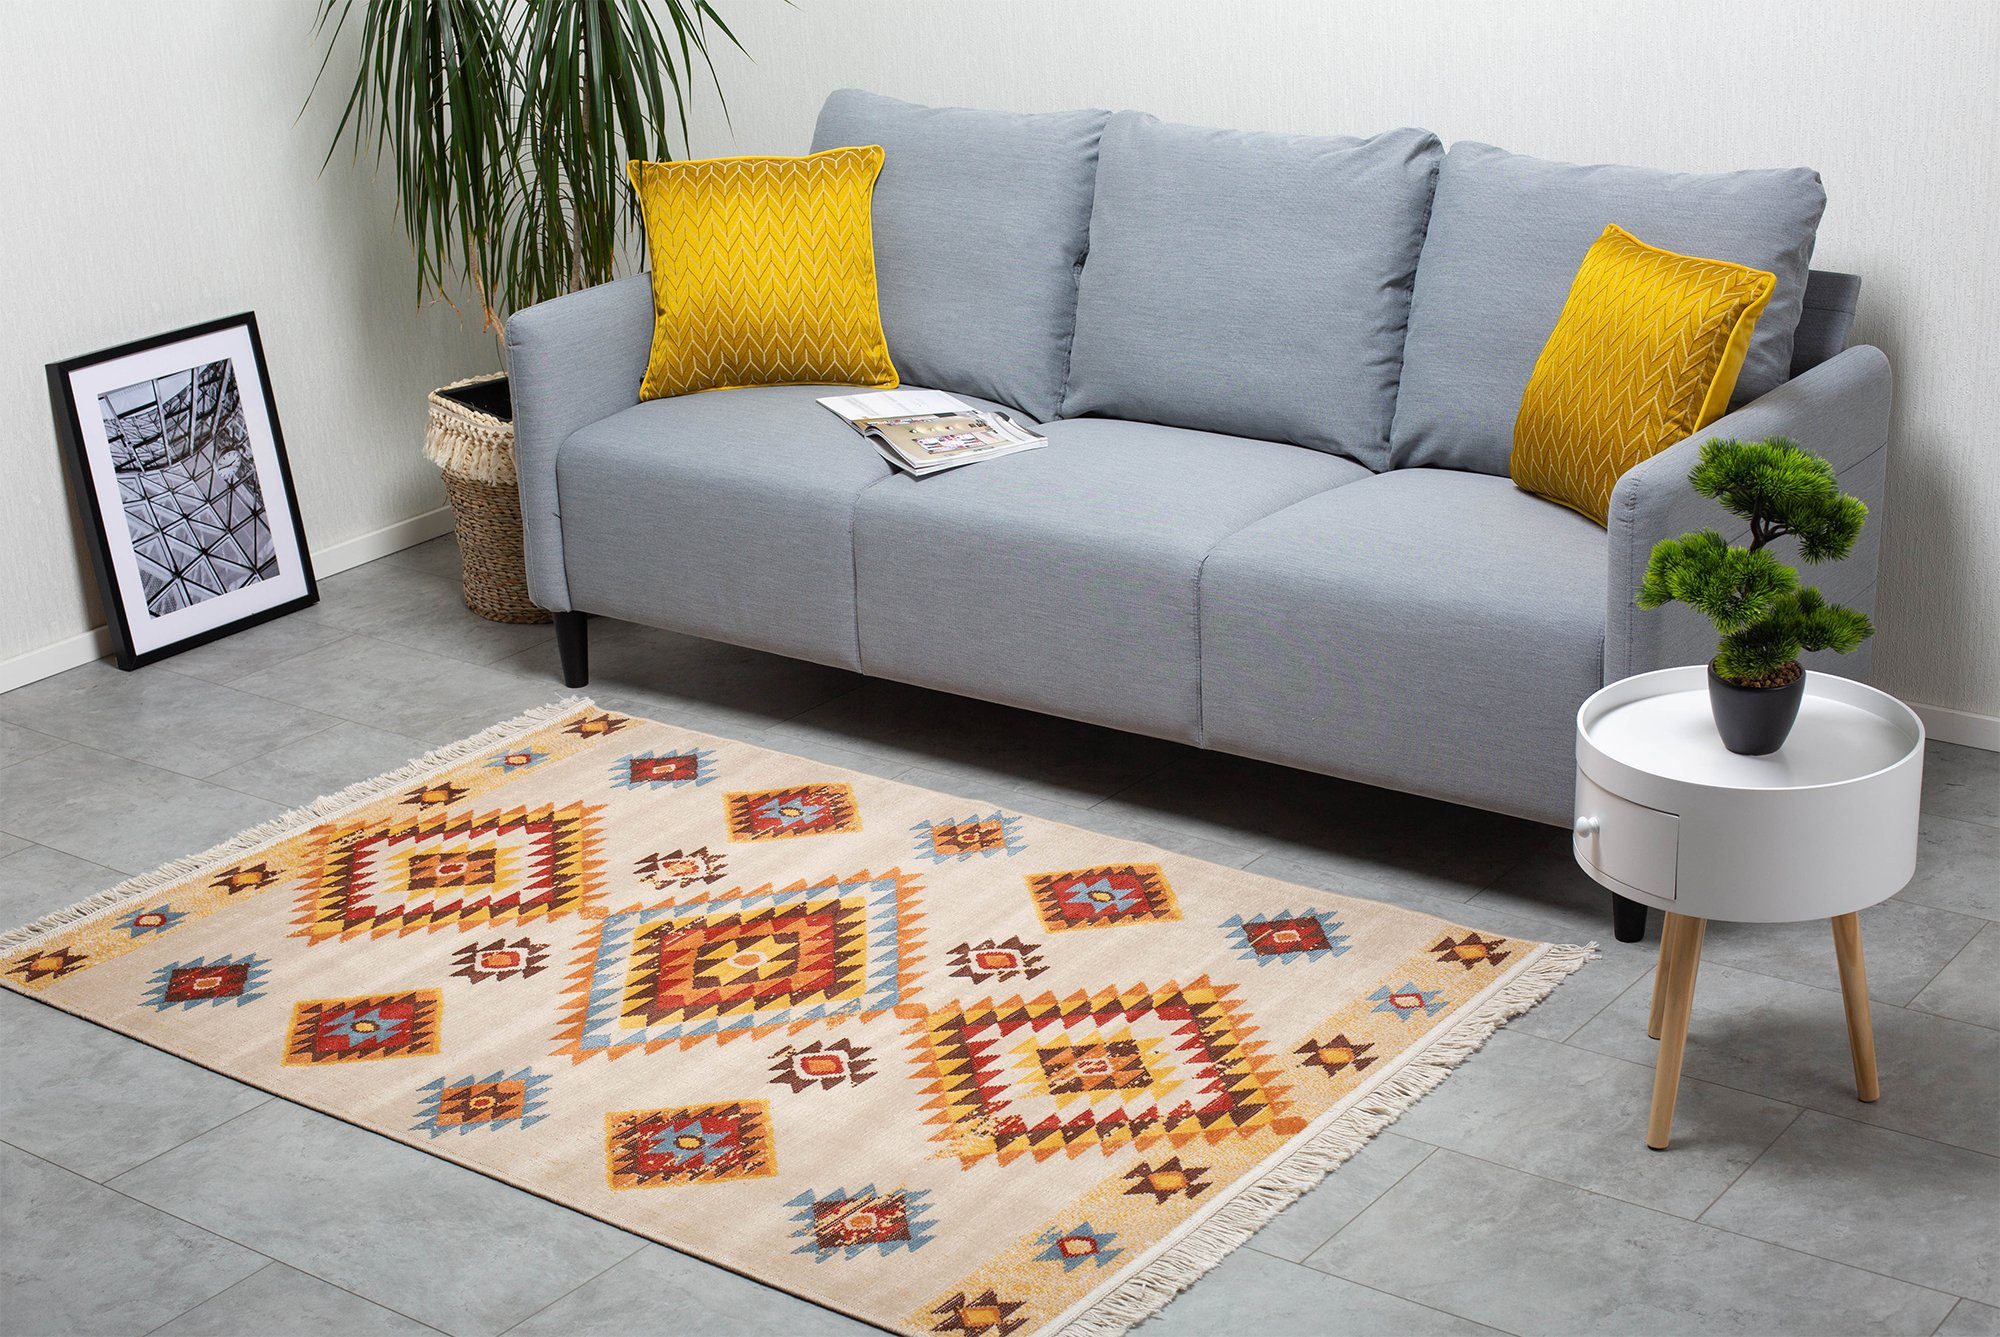 Teppich Fransenteppich LUIS im Ethno-Stil - flexibel & faltbar für Wohnzimmer/Schlafzimmer/Esszimmer, recycelte Baumwolle und Kunstfaser, DomDeco